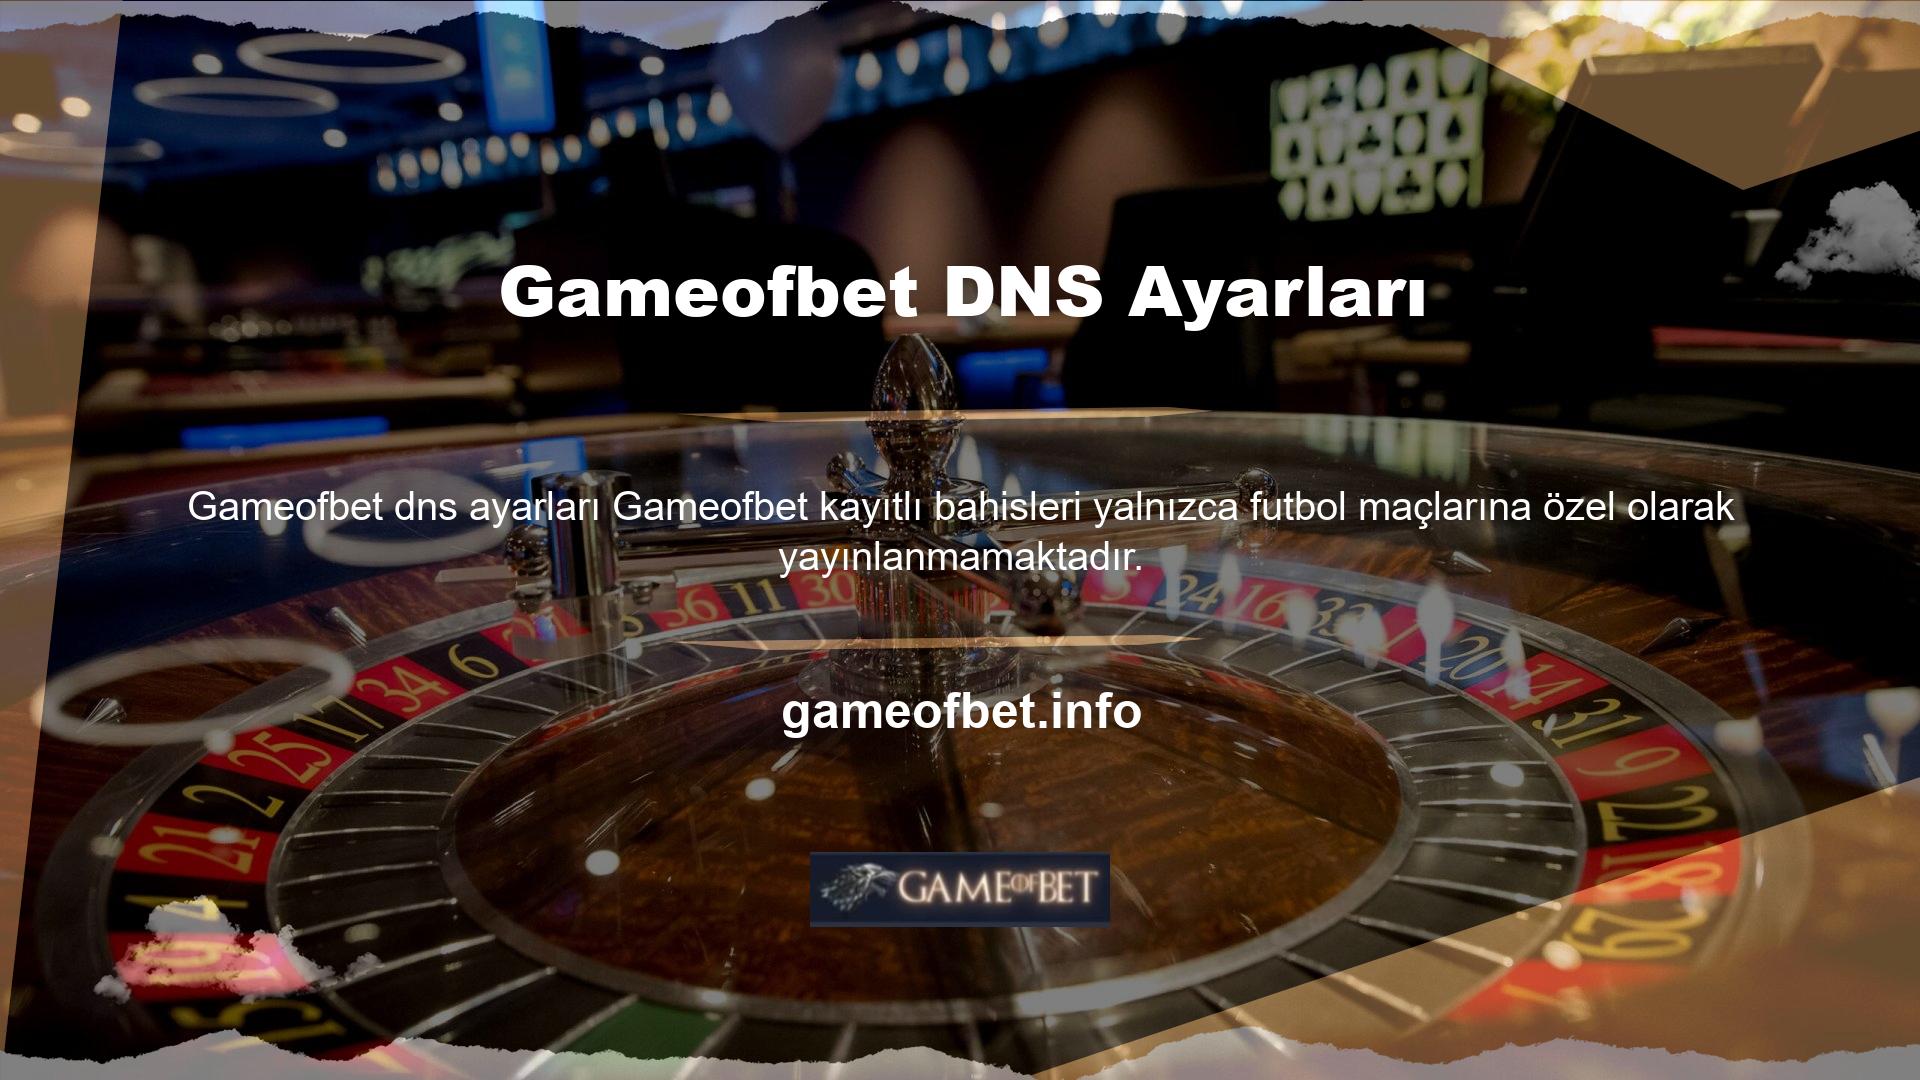 Gameofbet DNS ayarları hakkında daha fazla bilgi edinin Grand Slam turnuvaları sırasında basketbol maçlarını izleyebilirsiniz